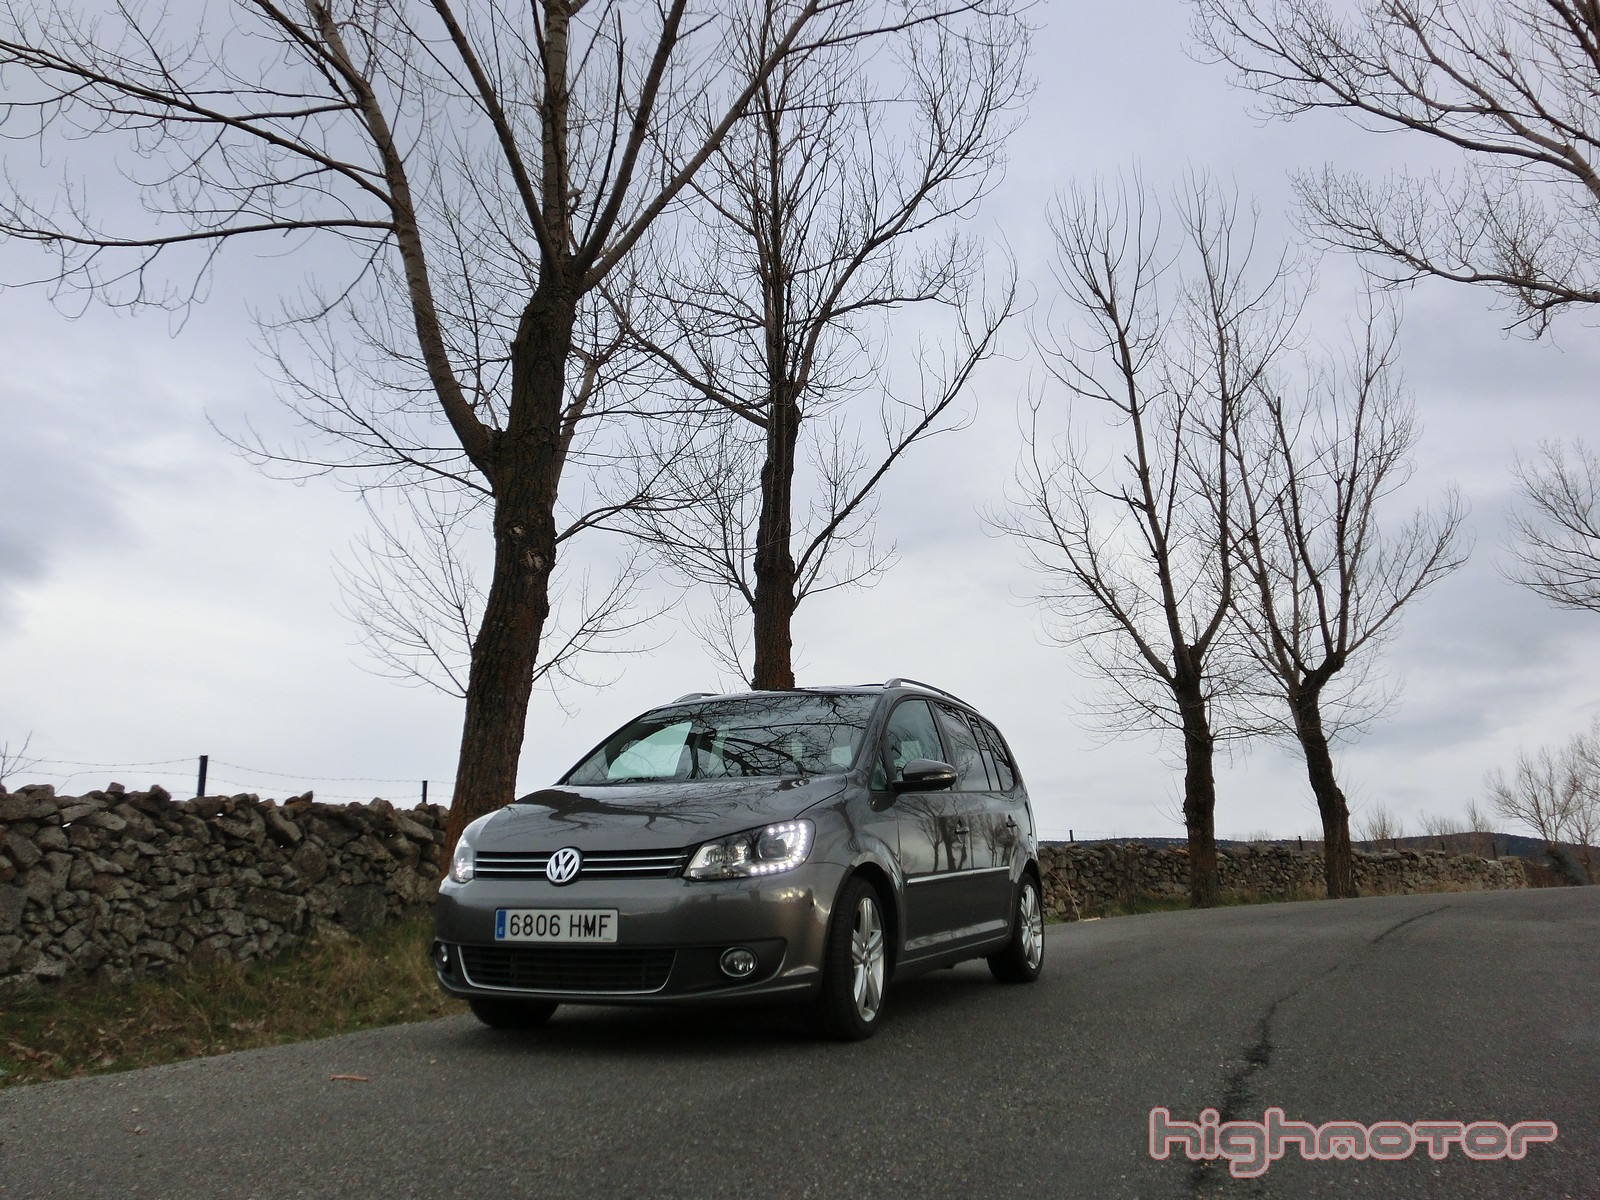 Volkswagen Touran 2.0 TDI 140 CV DSG, prueba (Equipamiento, precio y valoración)